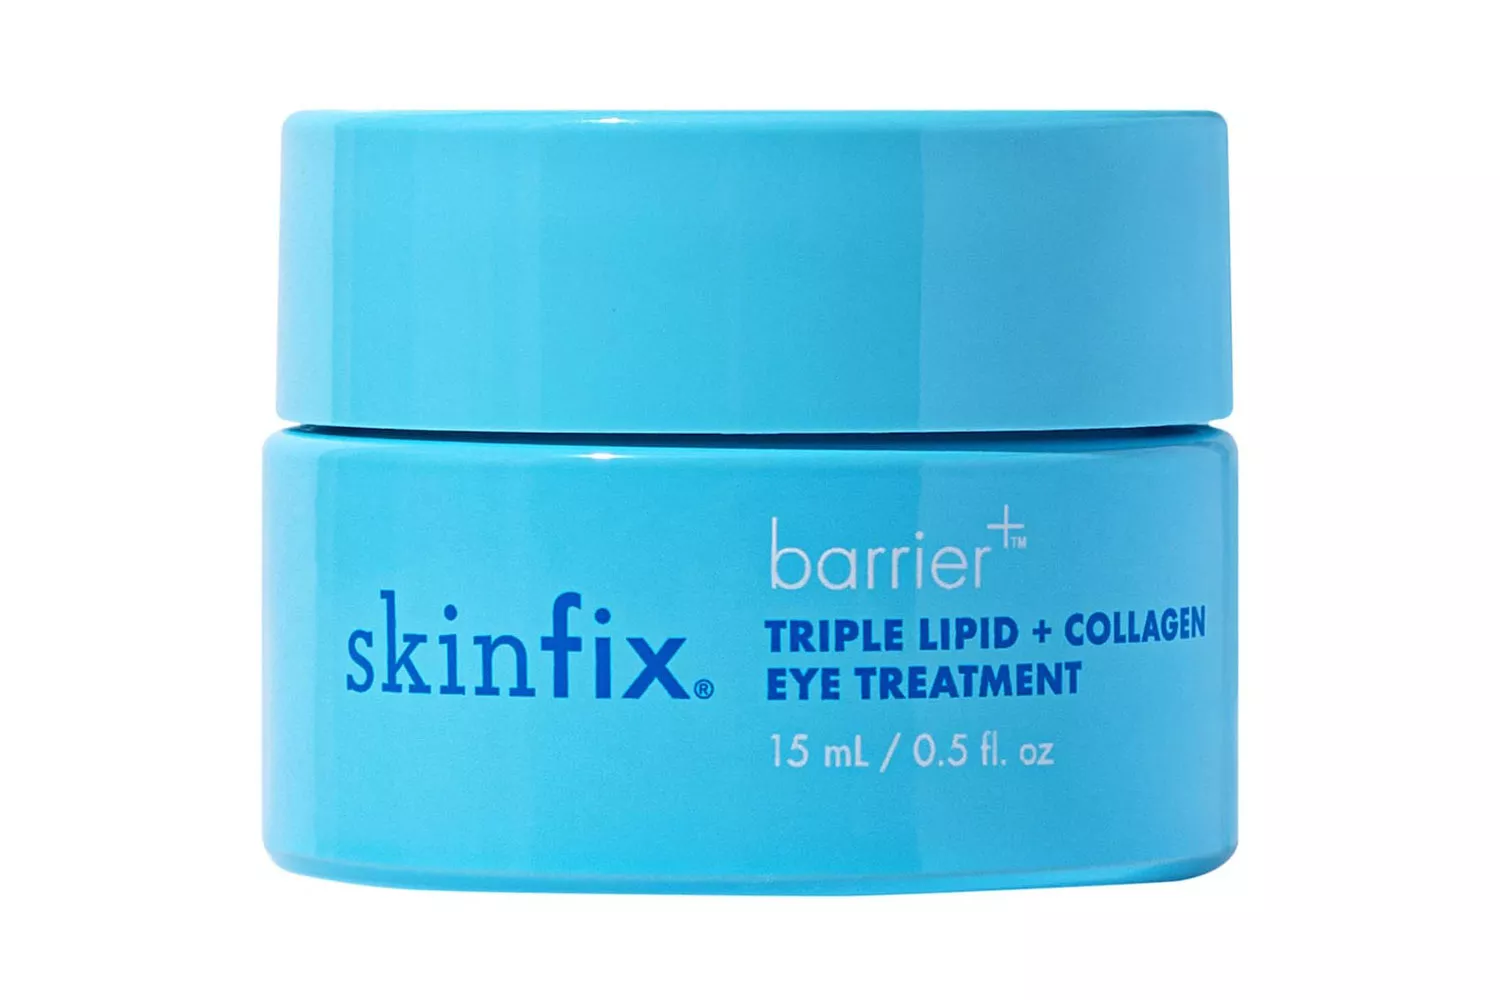 Skinfix barrier+ Triple Lipid + Collagen Brightening Eye Treatment 